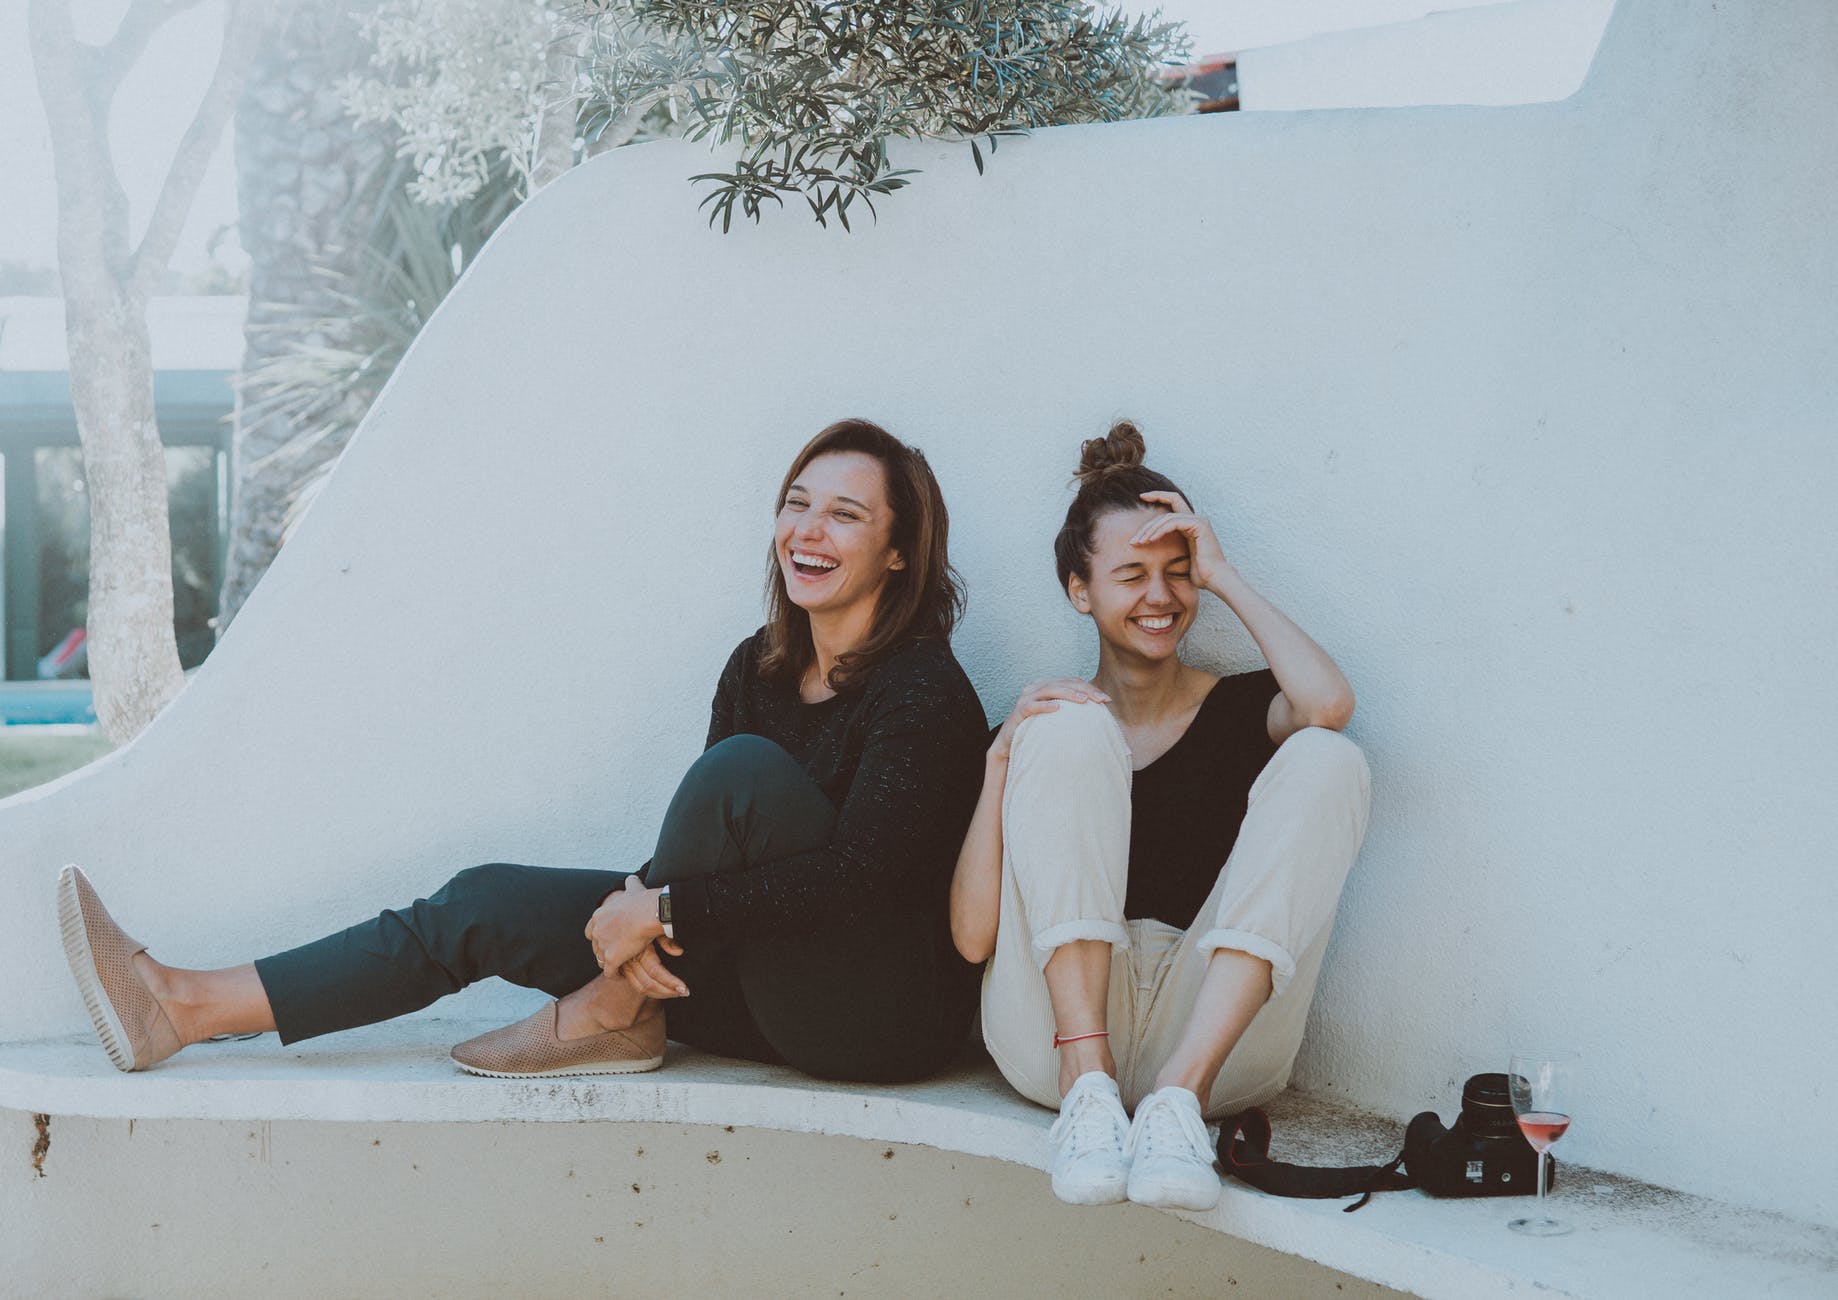 Duas mulheres brancas, jovens, ambas rindo, sentadas a bera de uma piscina vazia.